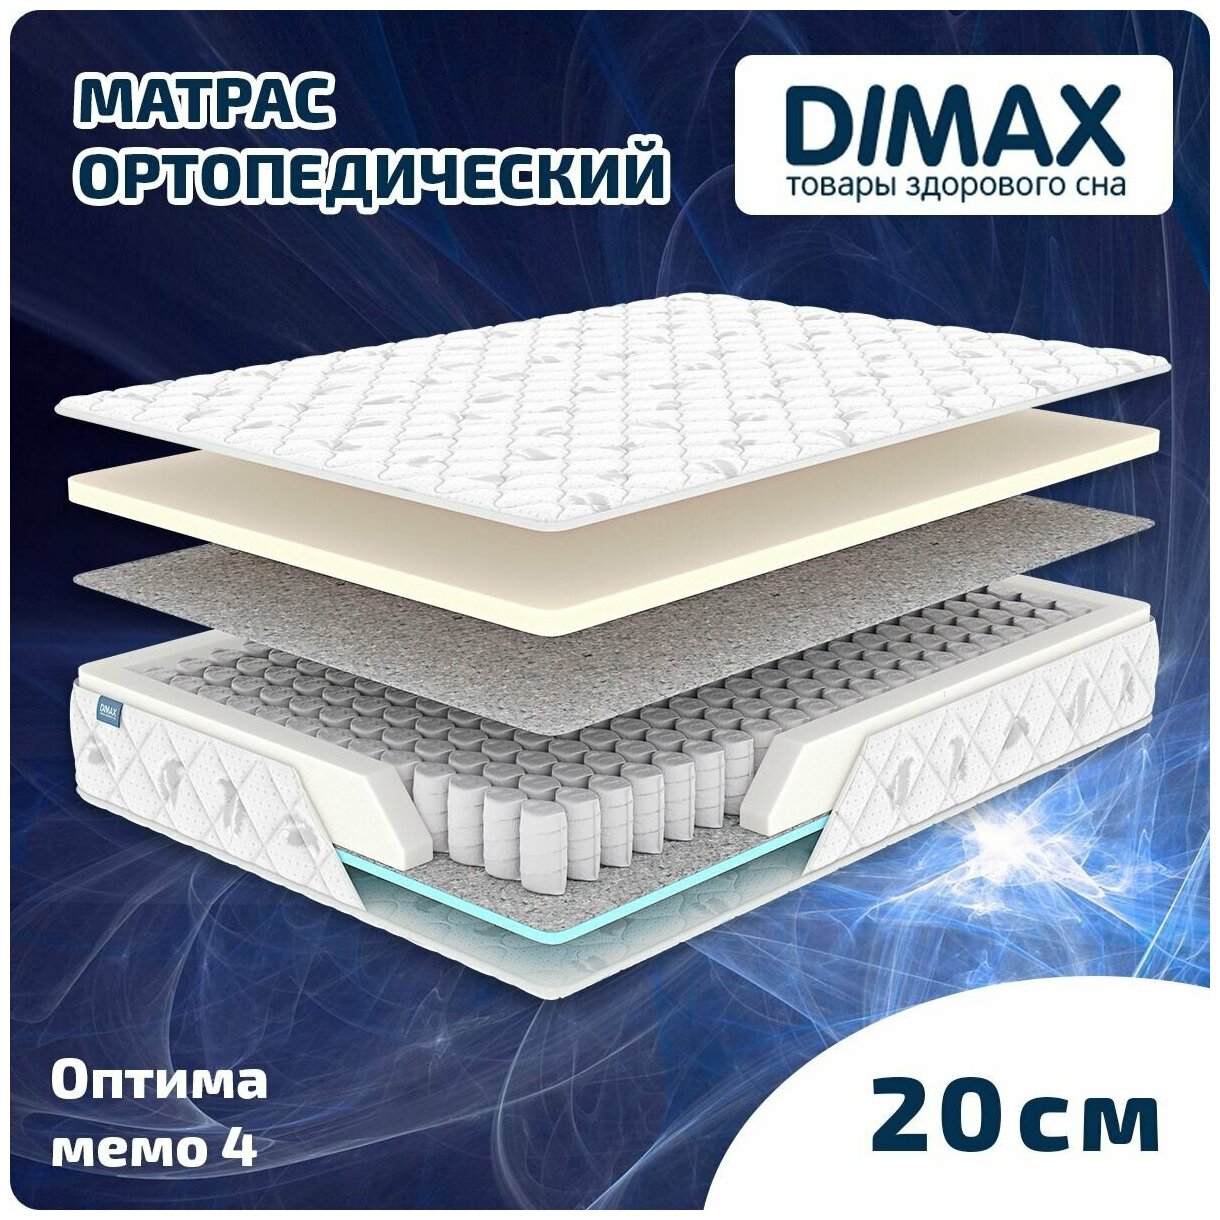 Матрас Dimax Оптима мемо 4 200x200